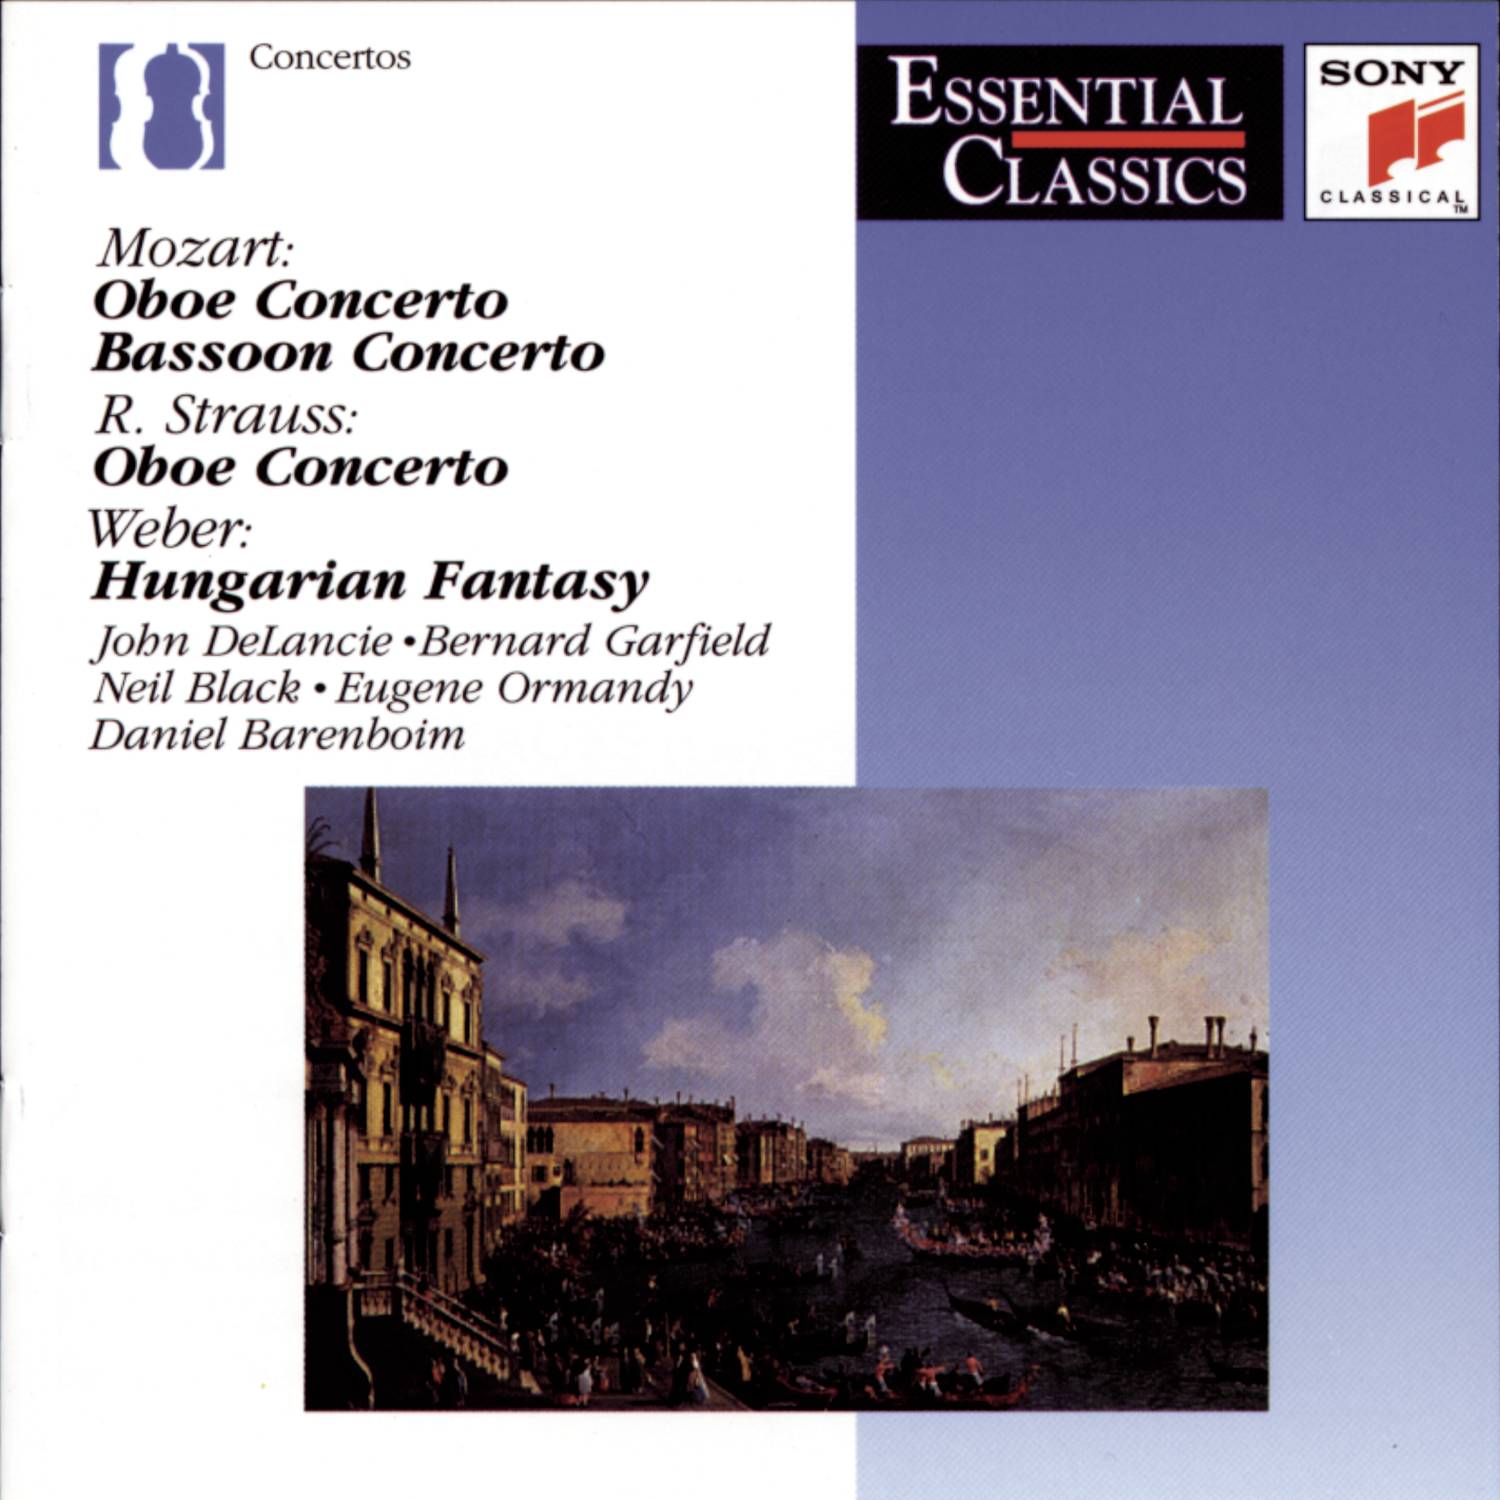 Concerto for Oboe and Orchestra in C Major, K.314 (285d): II. Andante ma non troppo